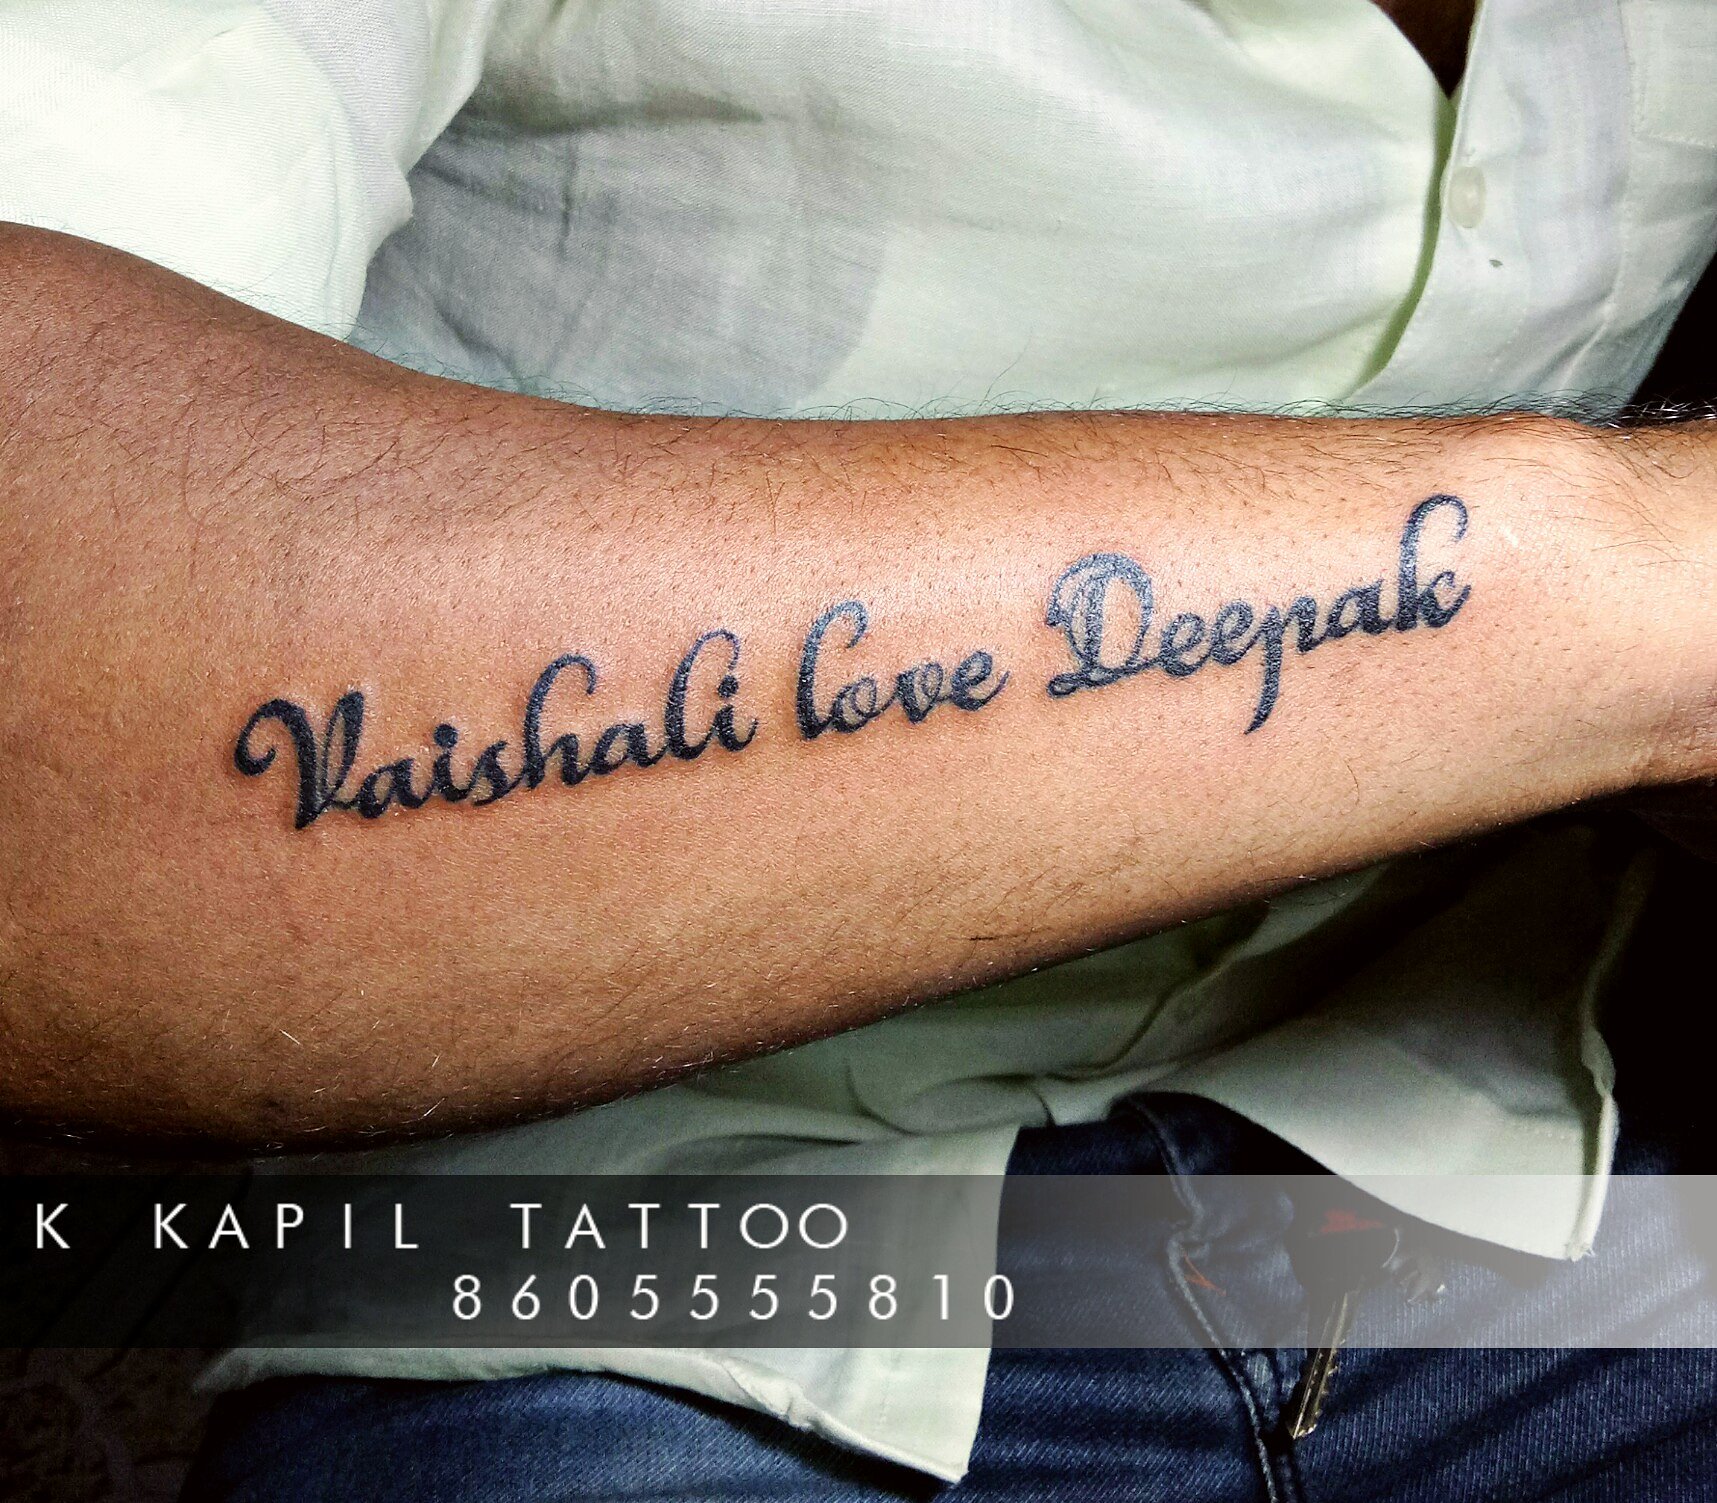 Deepak Muyal Tattoos in Dehradun CityDehradun  Best Tattoo Artists in  Dehradun  Justdial